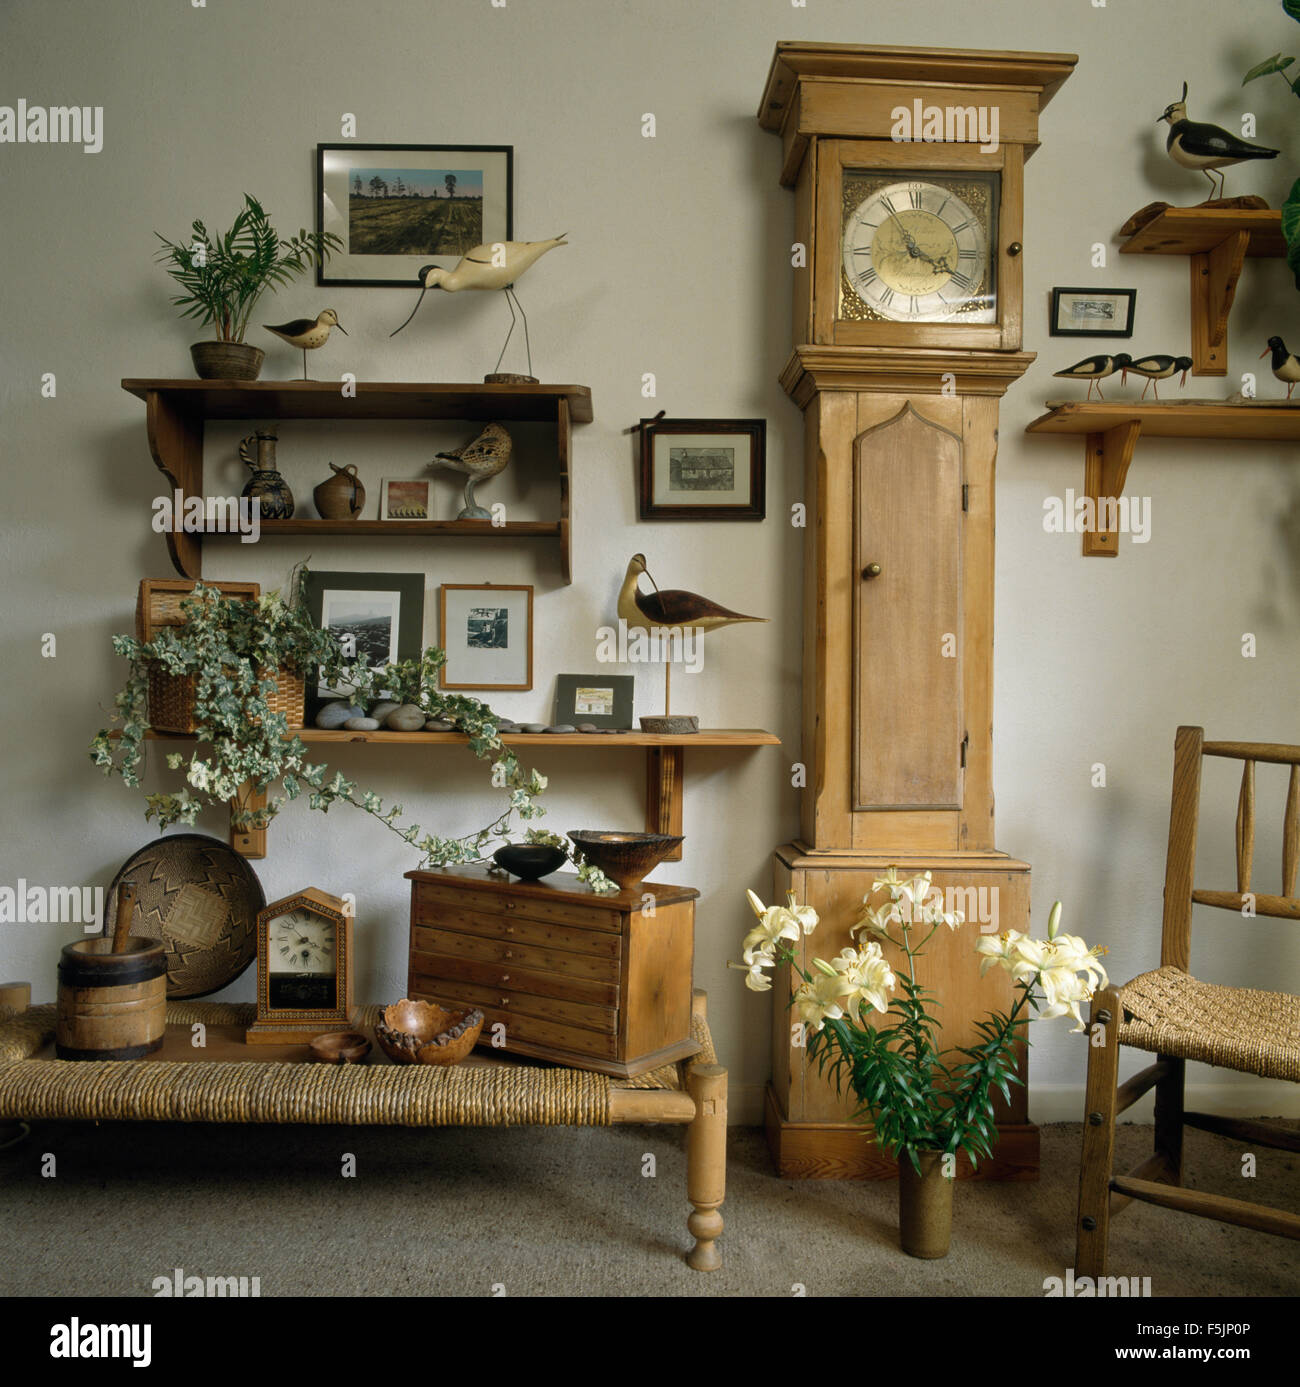 Horloge de parquet en pin et un faible tabouret en rotin années 90 dans une salle à manger avec collection d'oiseaux en bois sur les petites tablettes Banque D'Images